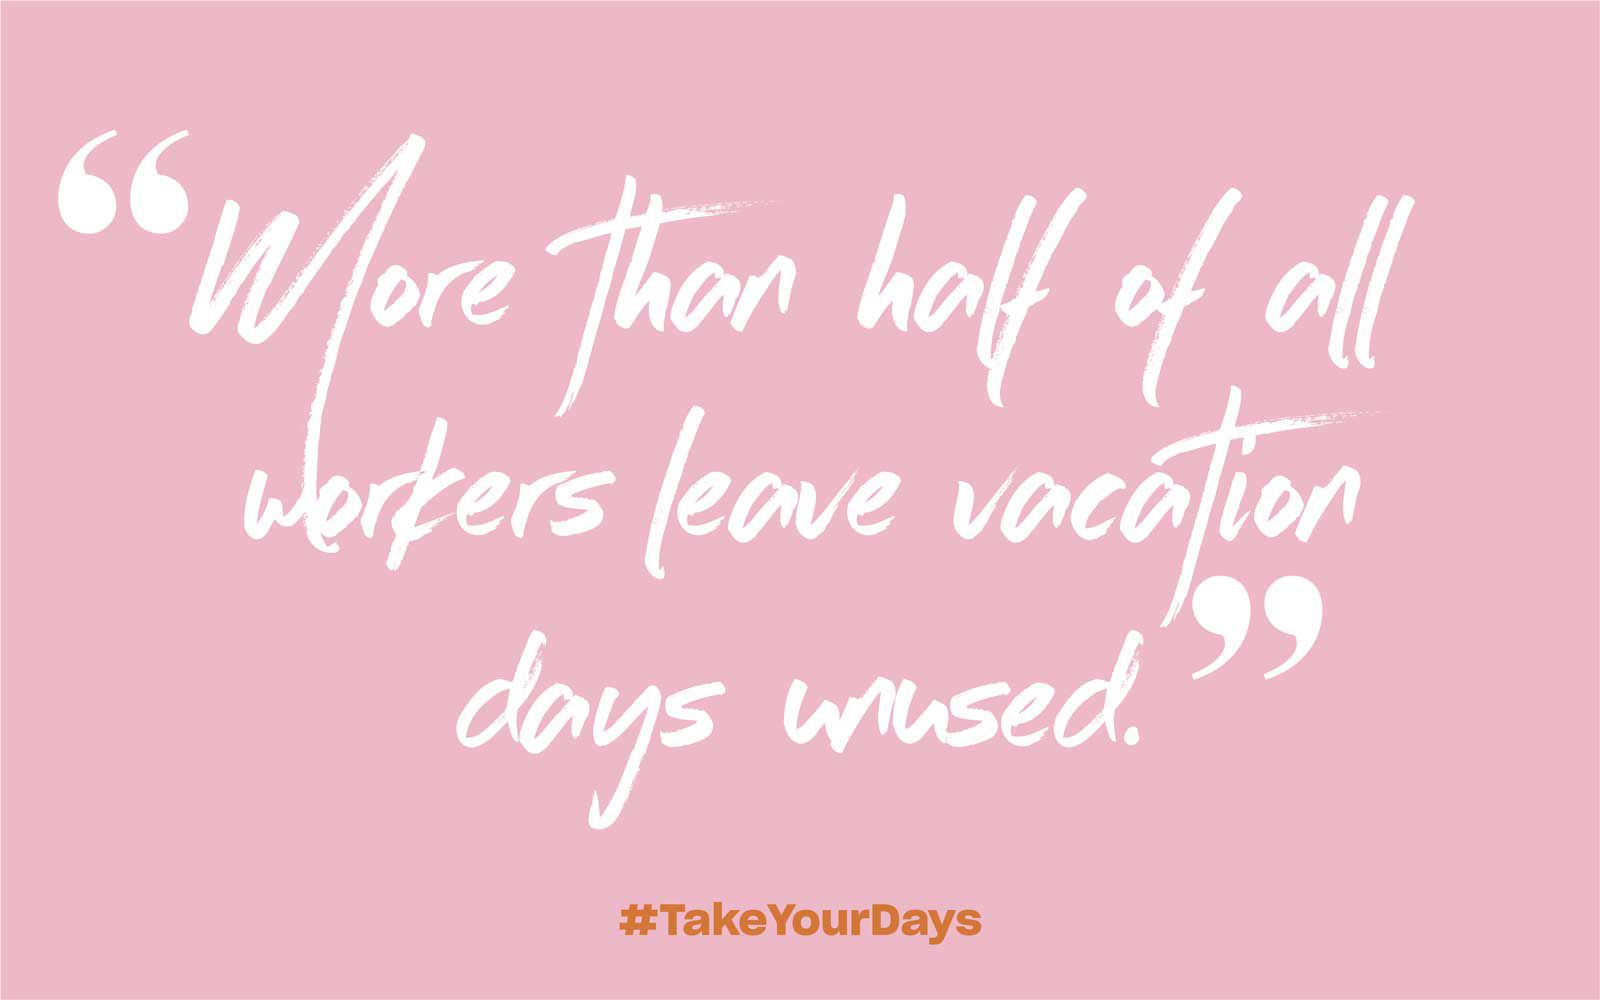 Plus de la moitié de tous les travailleurs laissent des jours de vacances inutilisés